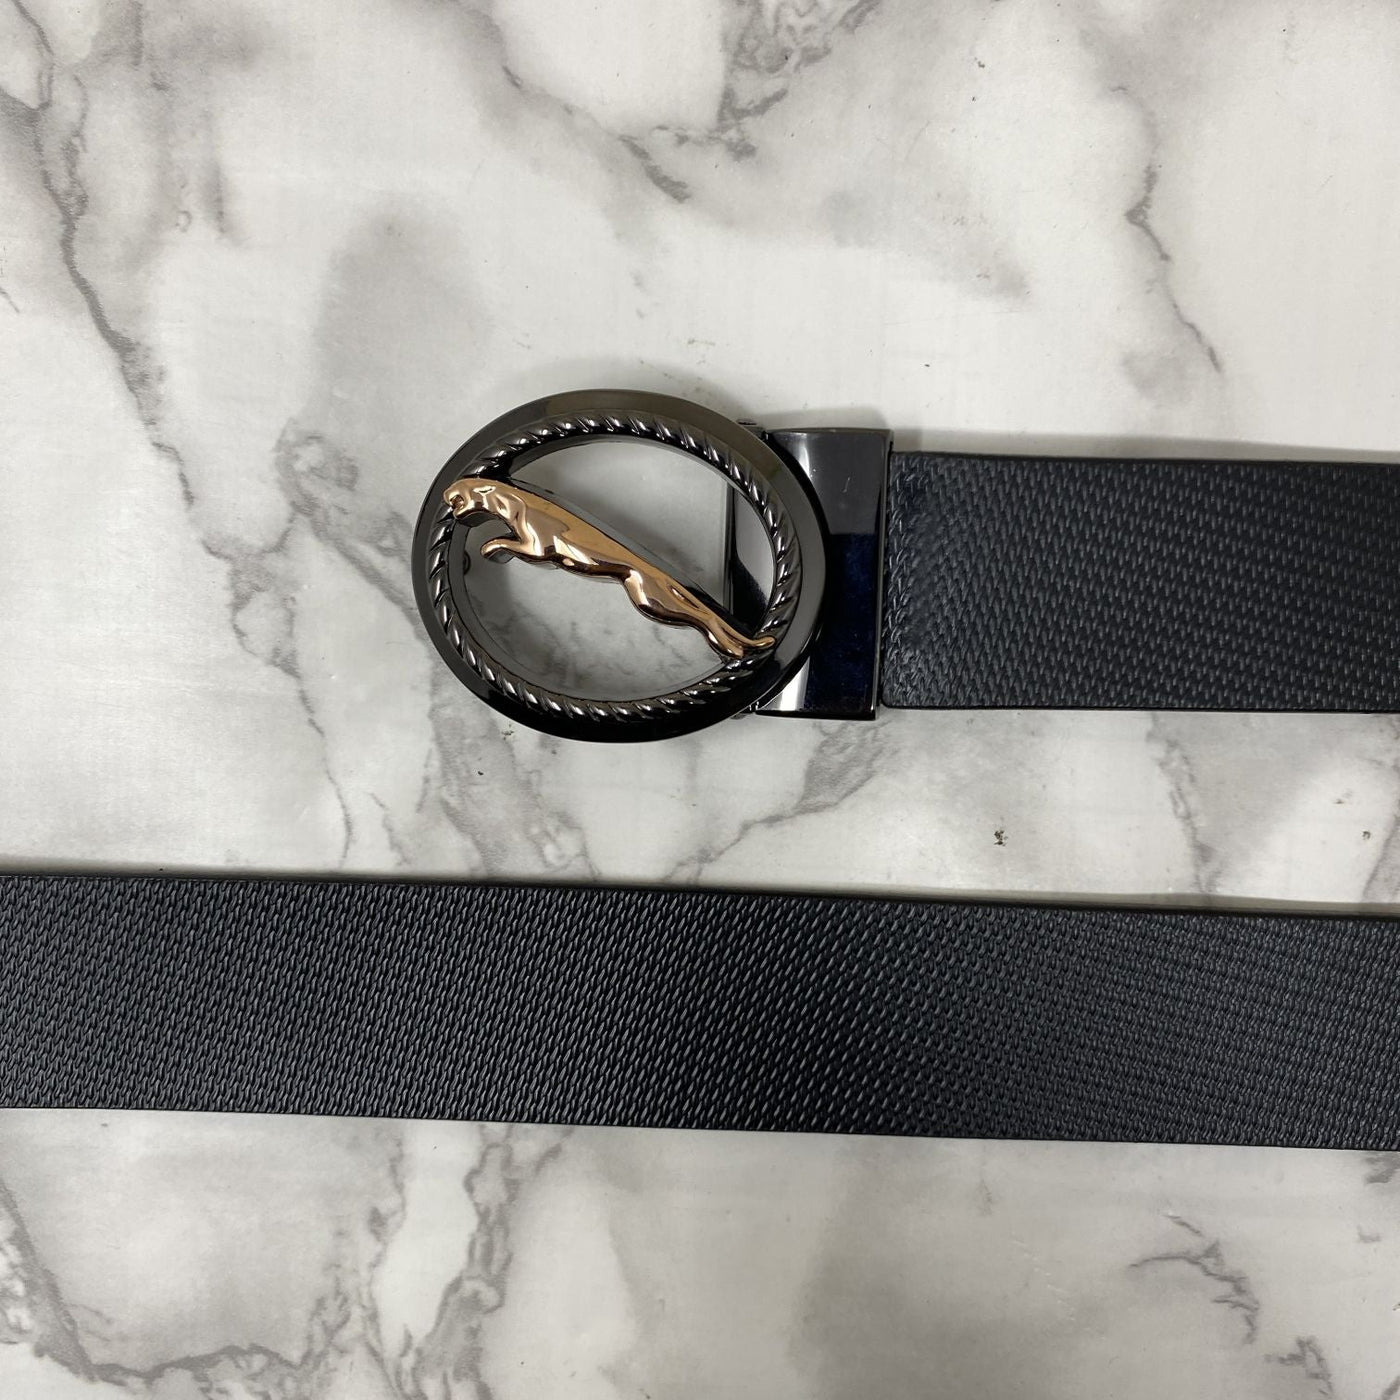 Round Jaguar Metal Buckle With Leather Strap Belt-UniqueandClassy